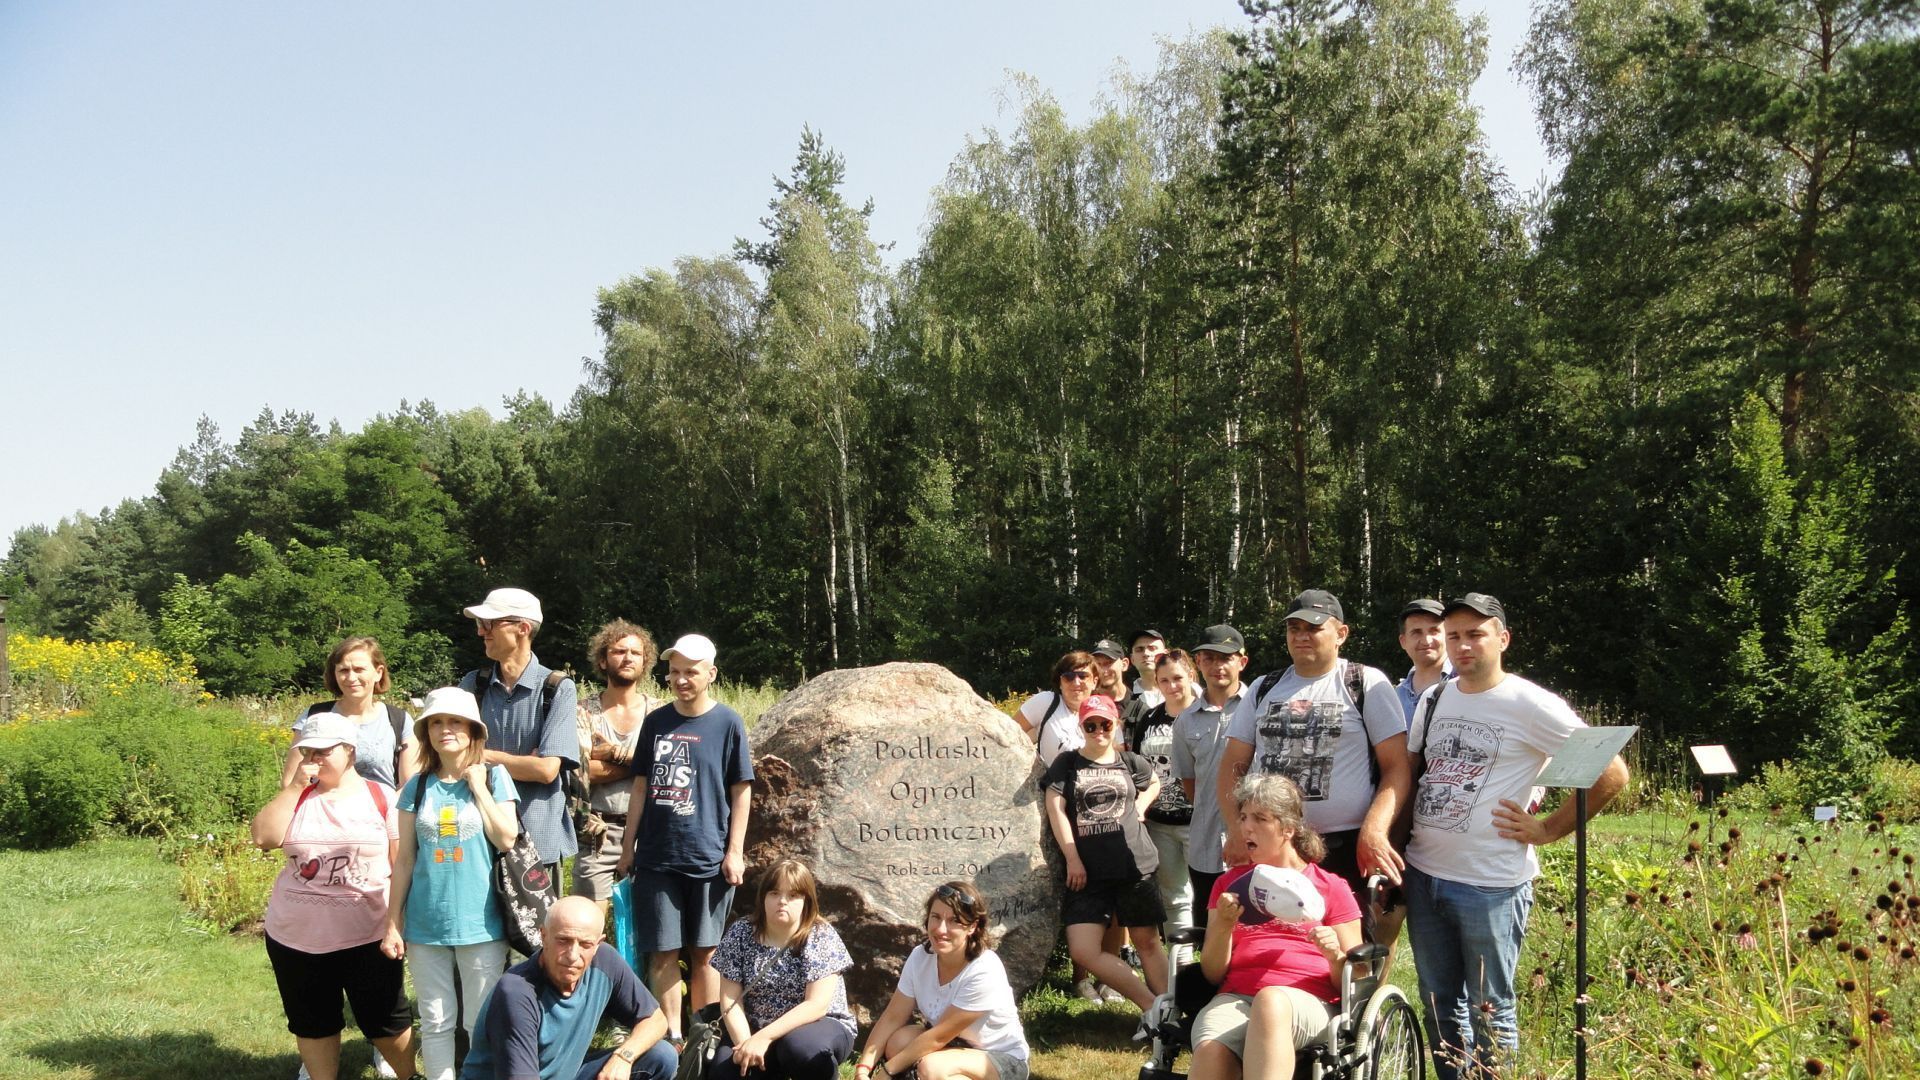 Uczestnicy wraz z opiekunami i przewodnikiem przy kamieniu z napisem Podlaski Ogród Botaniczny.